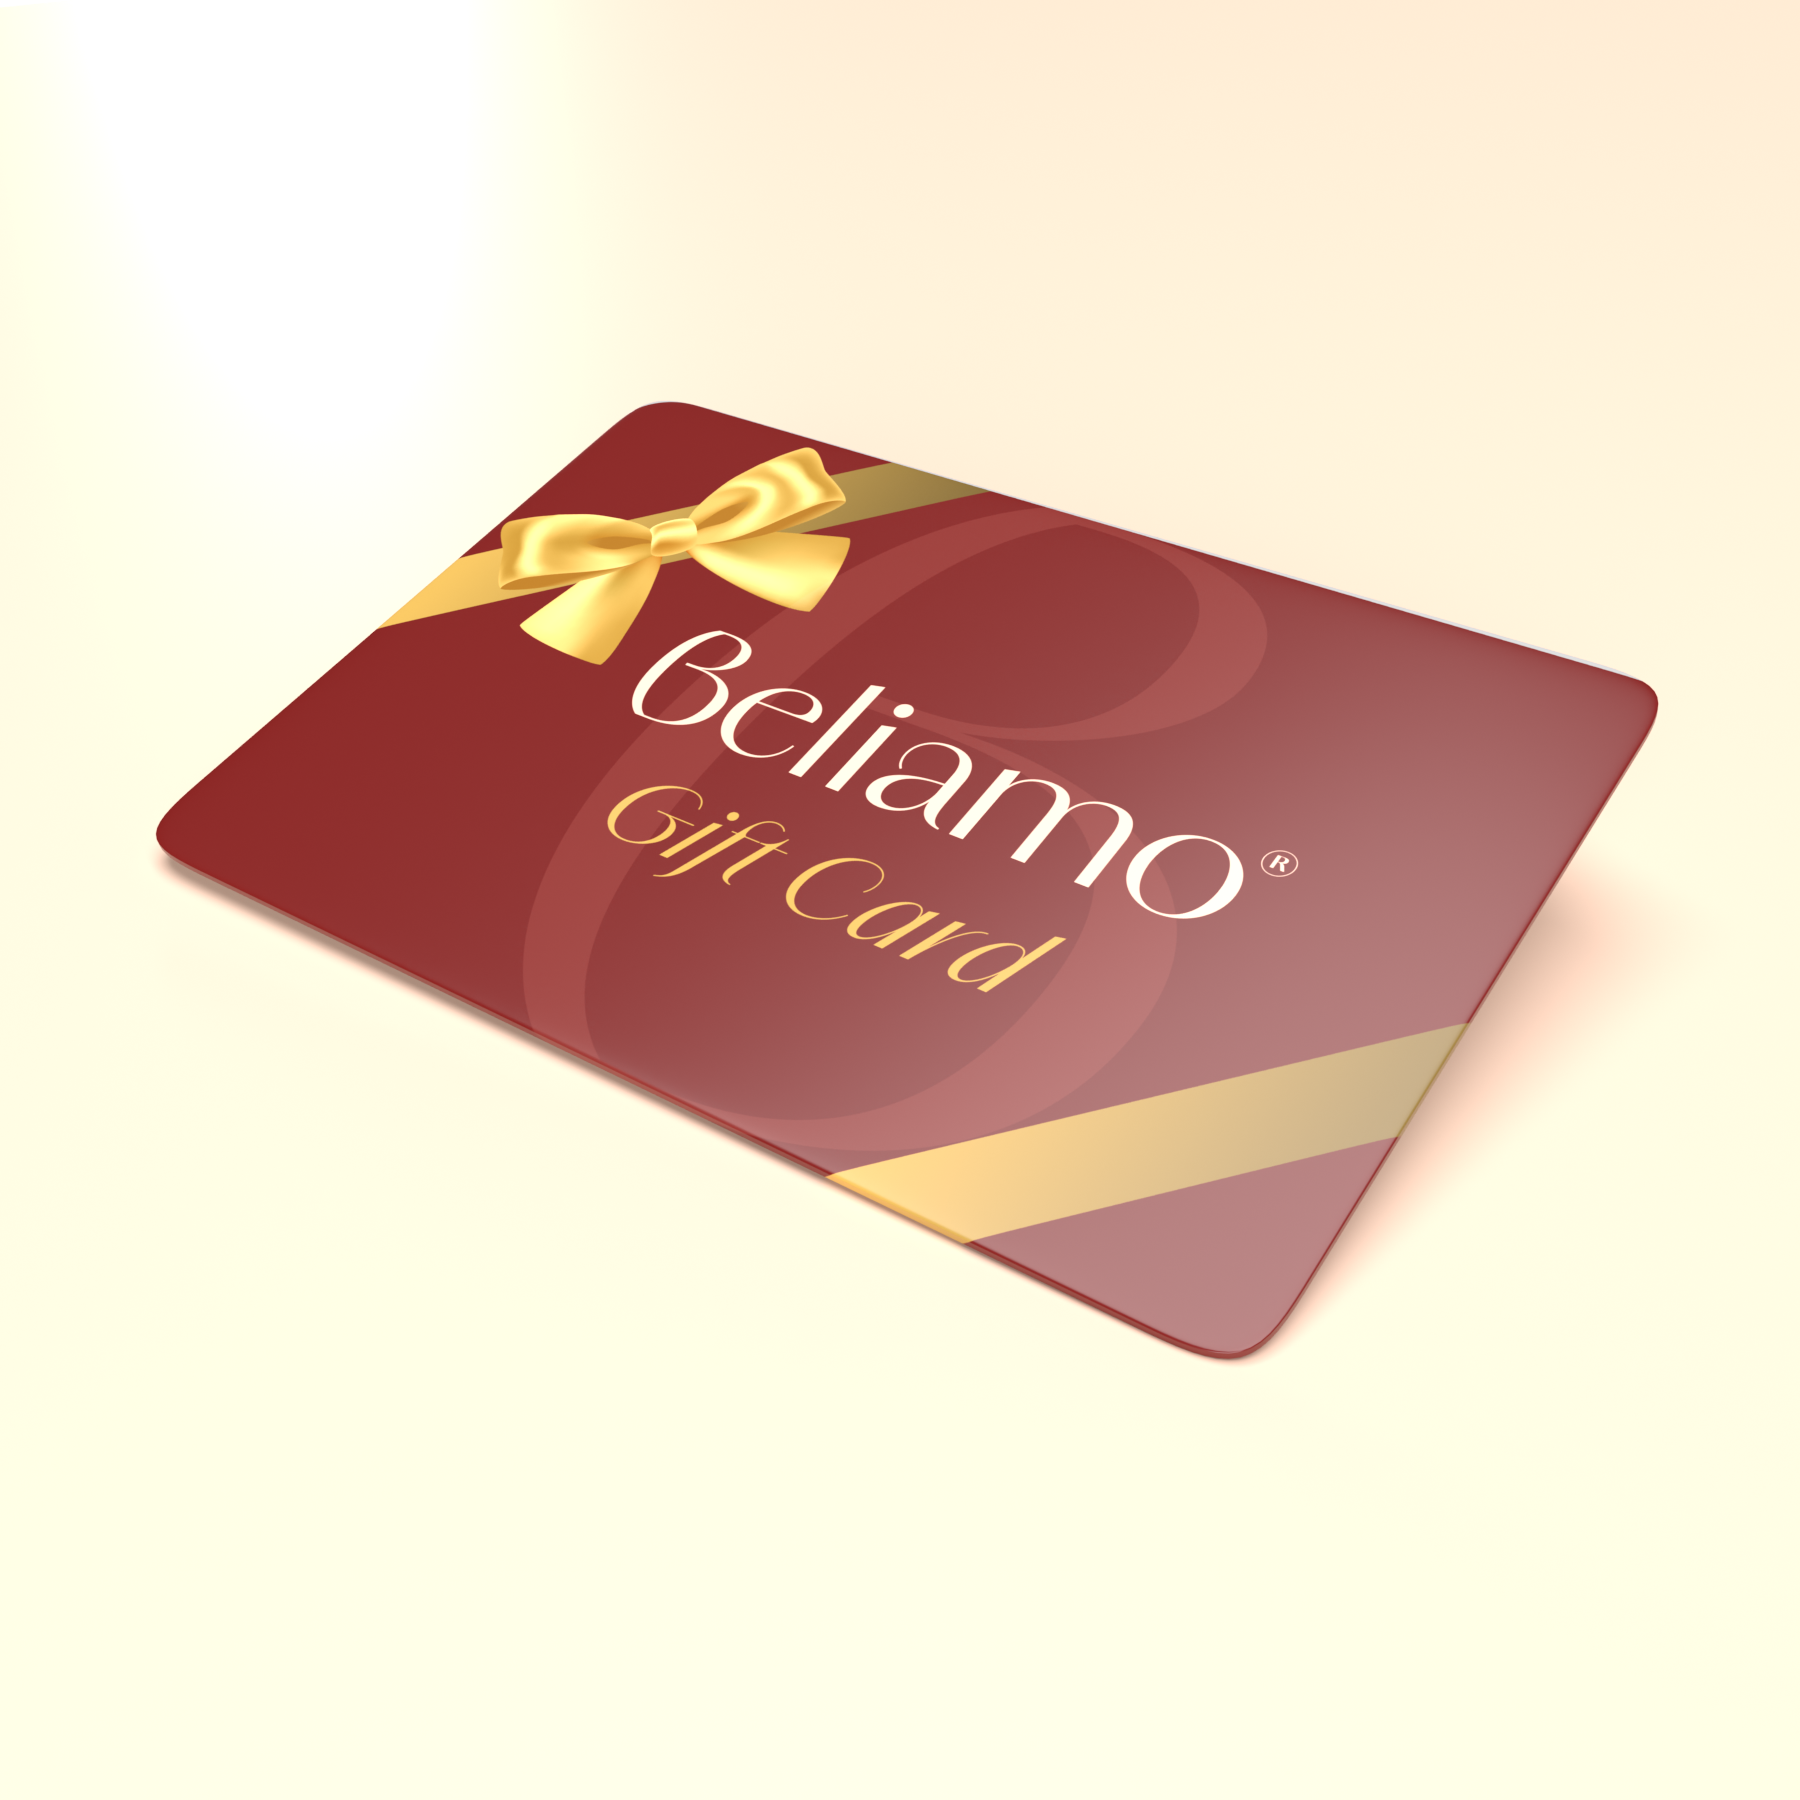 Regala il comfort con le Gift Card di Beliamo - Scopri i dettagli su Beliamo.com